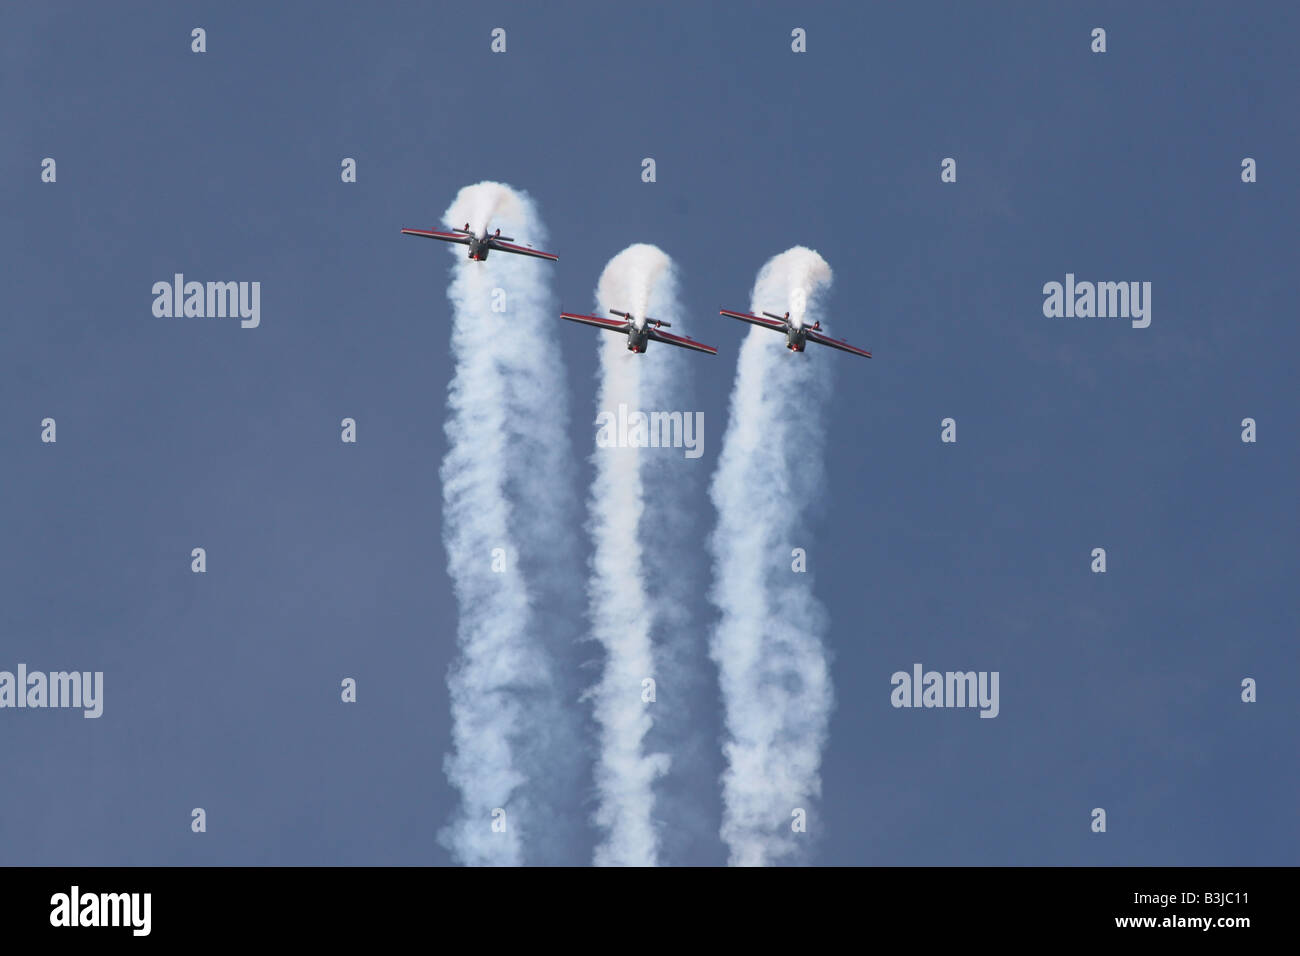 drei Flugzeuge looping in Formation mit Rauch Wege gegen blauen Himmel. Platz für Text. Stockfoto